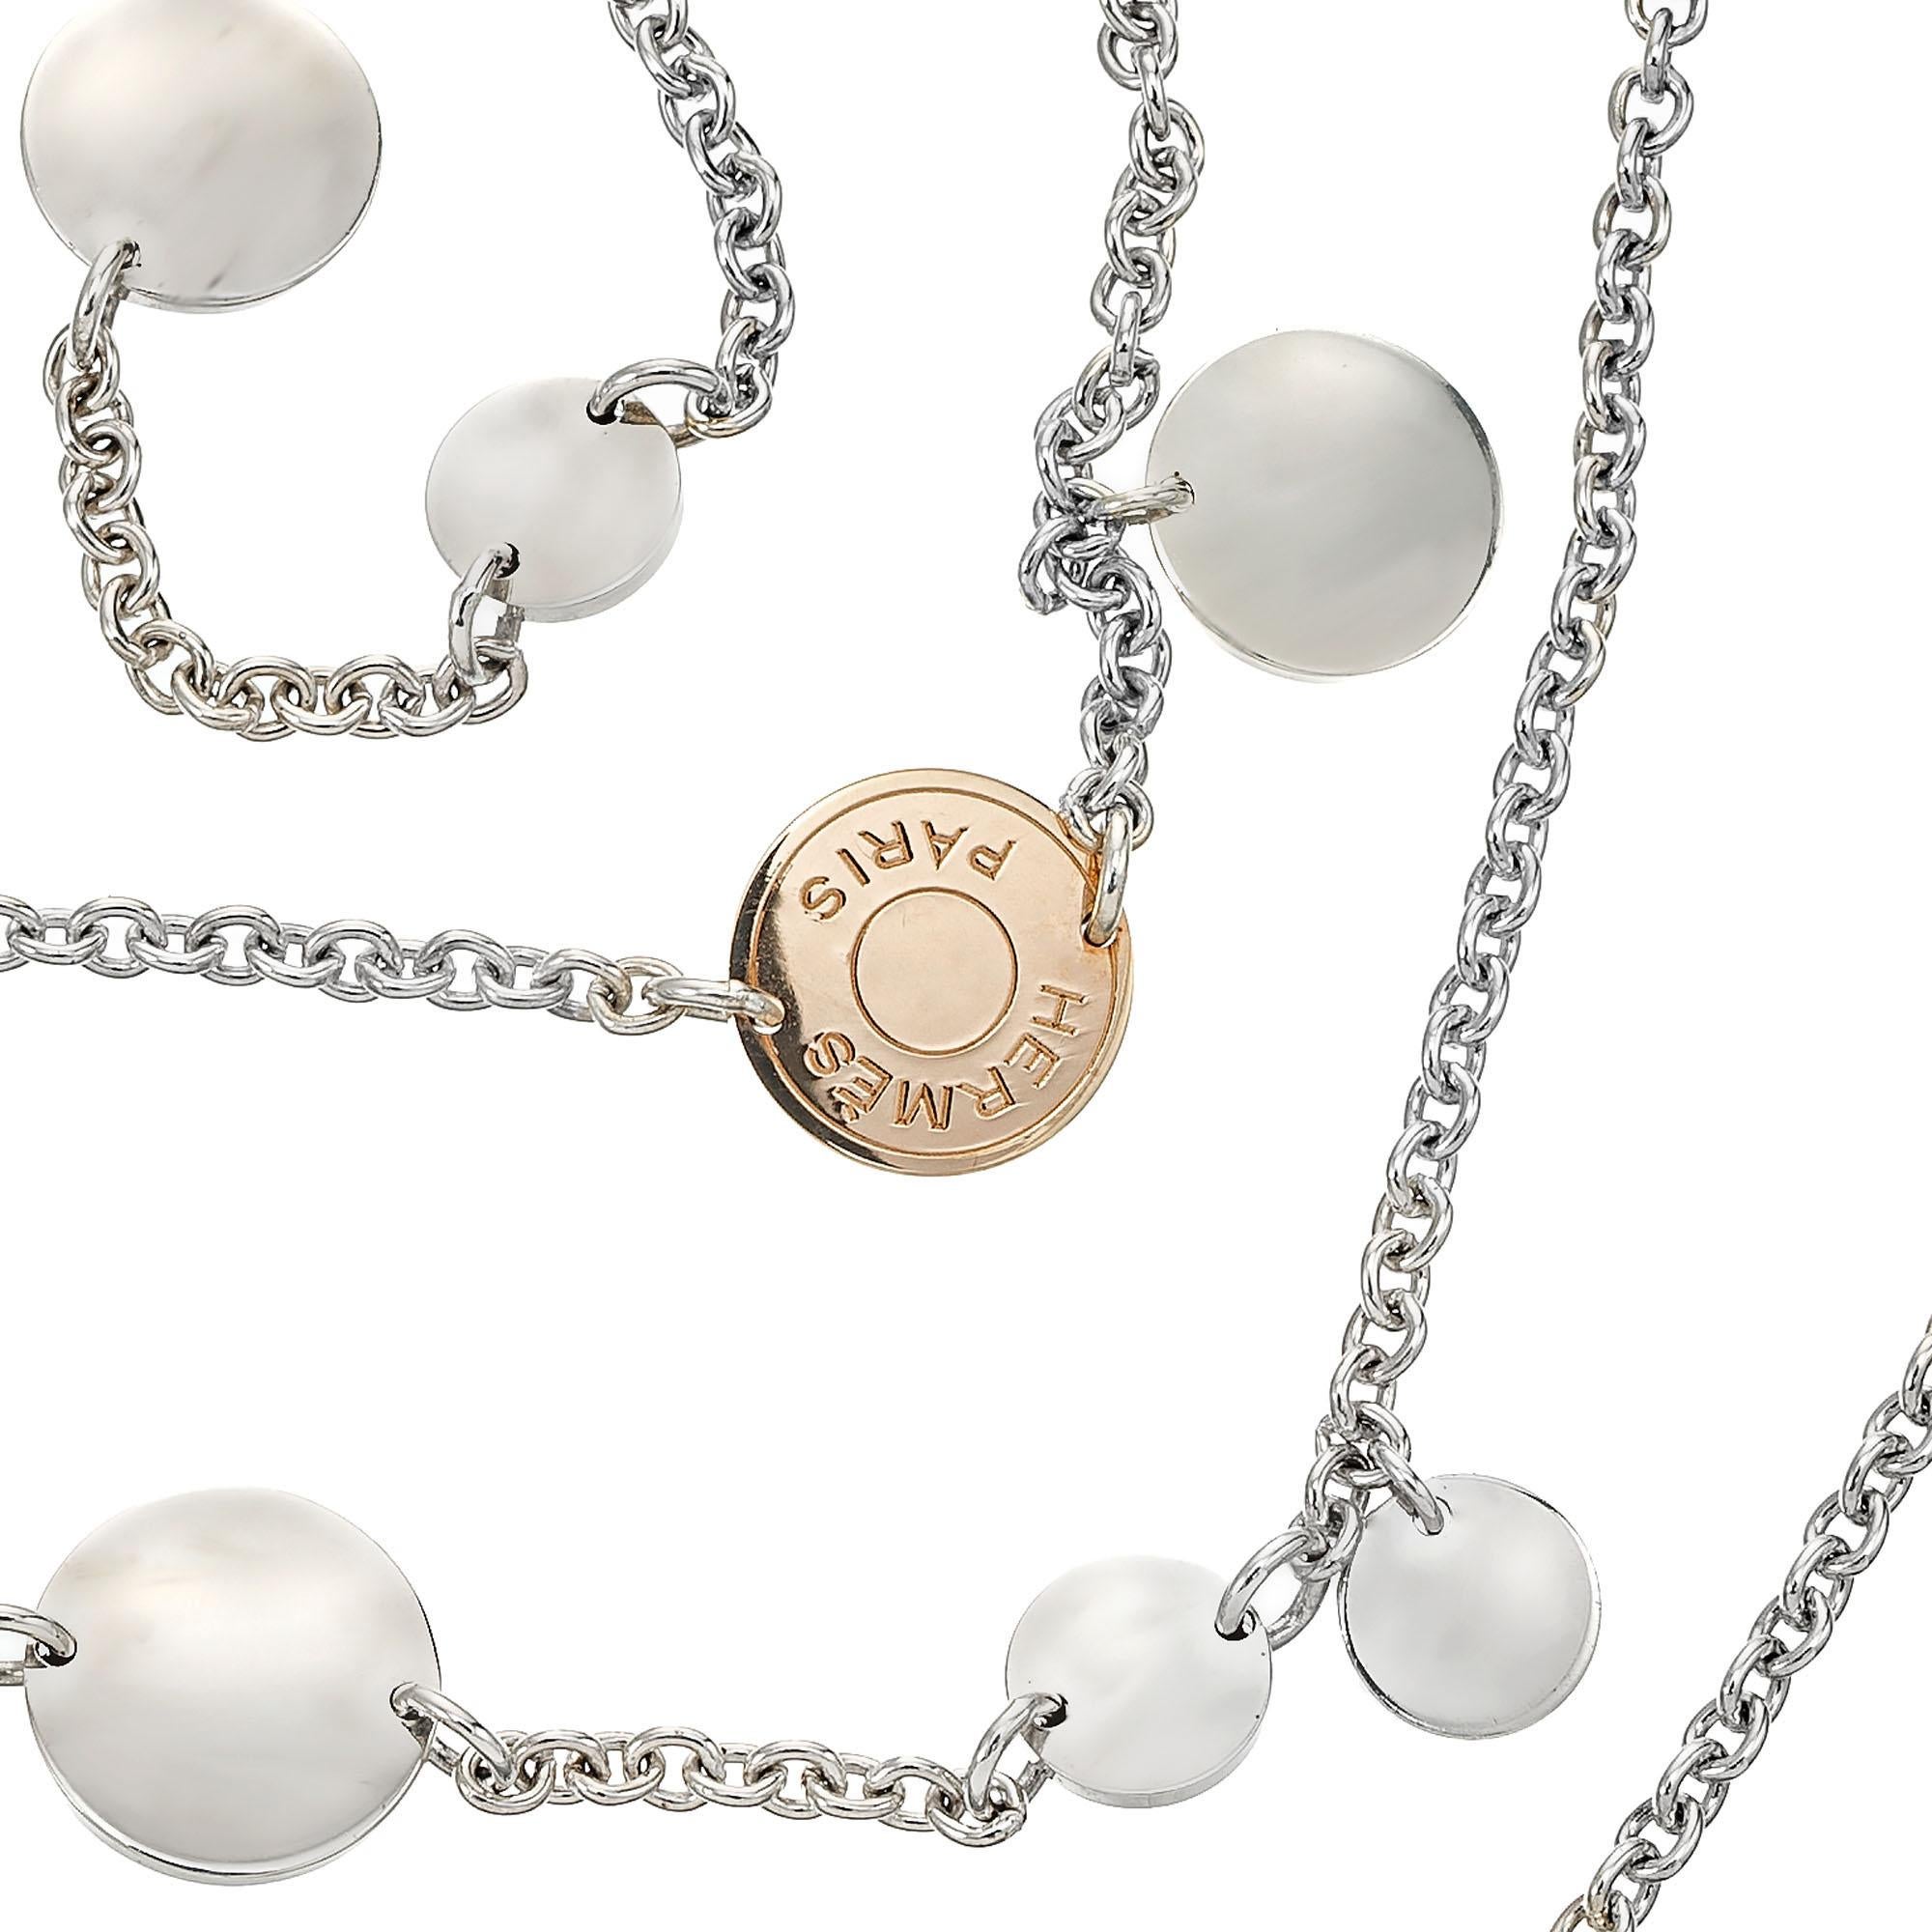  Hermes Confettis - Long collier en or rose et argent Pour femmes 